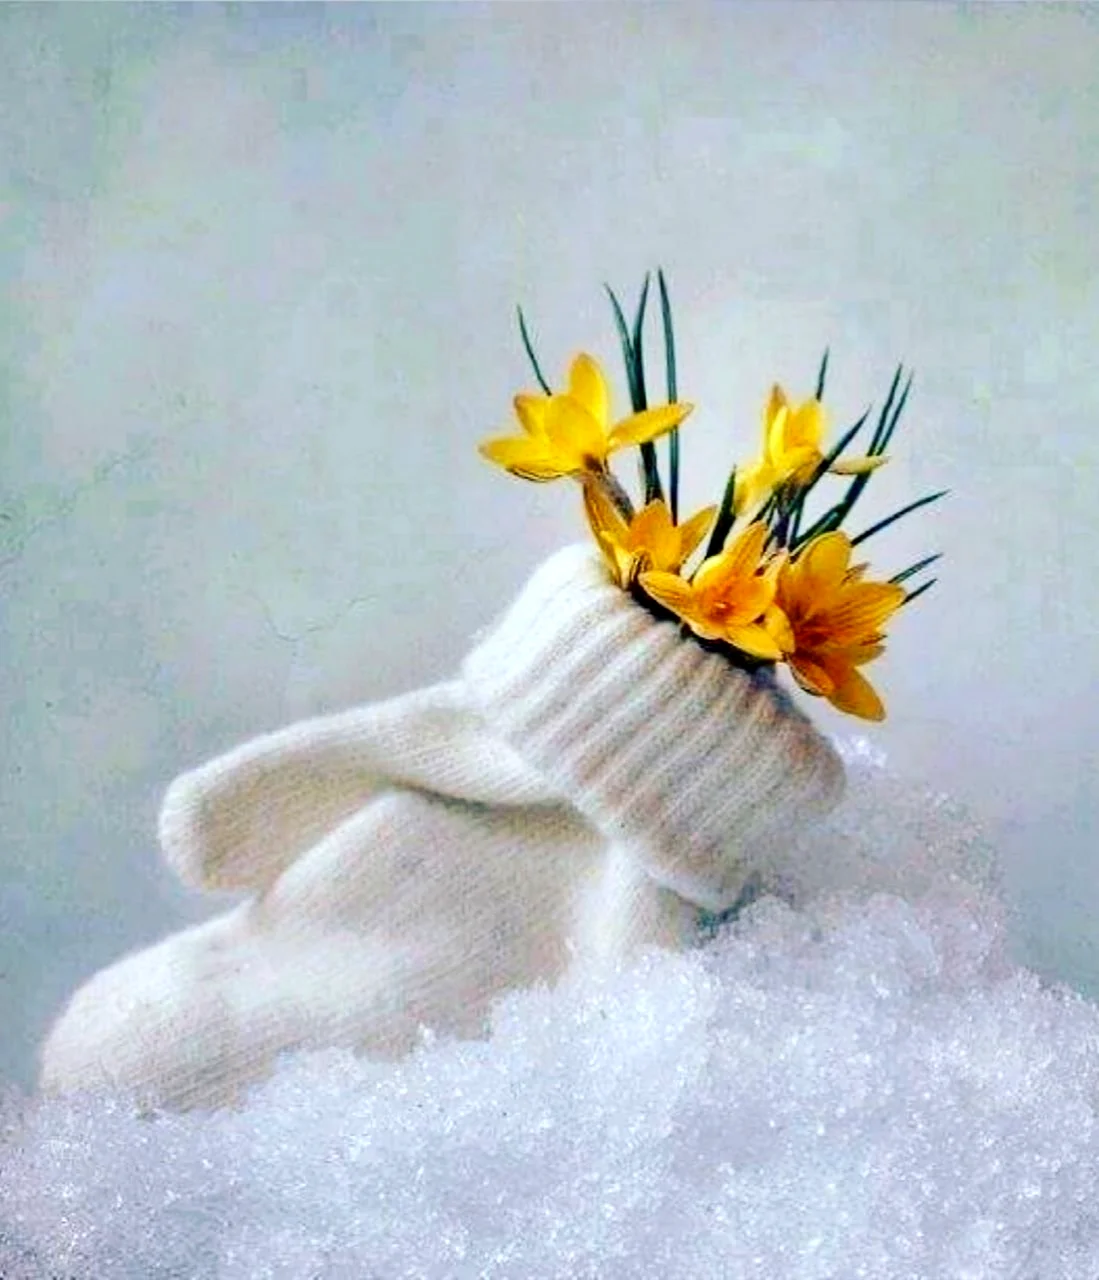 Цветы в валенках на снегу. Поздравление на праздник